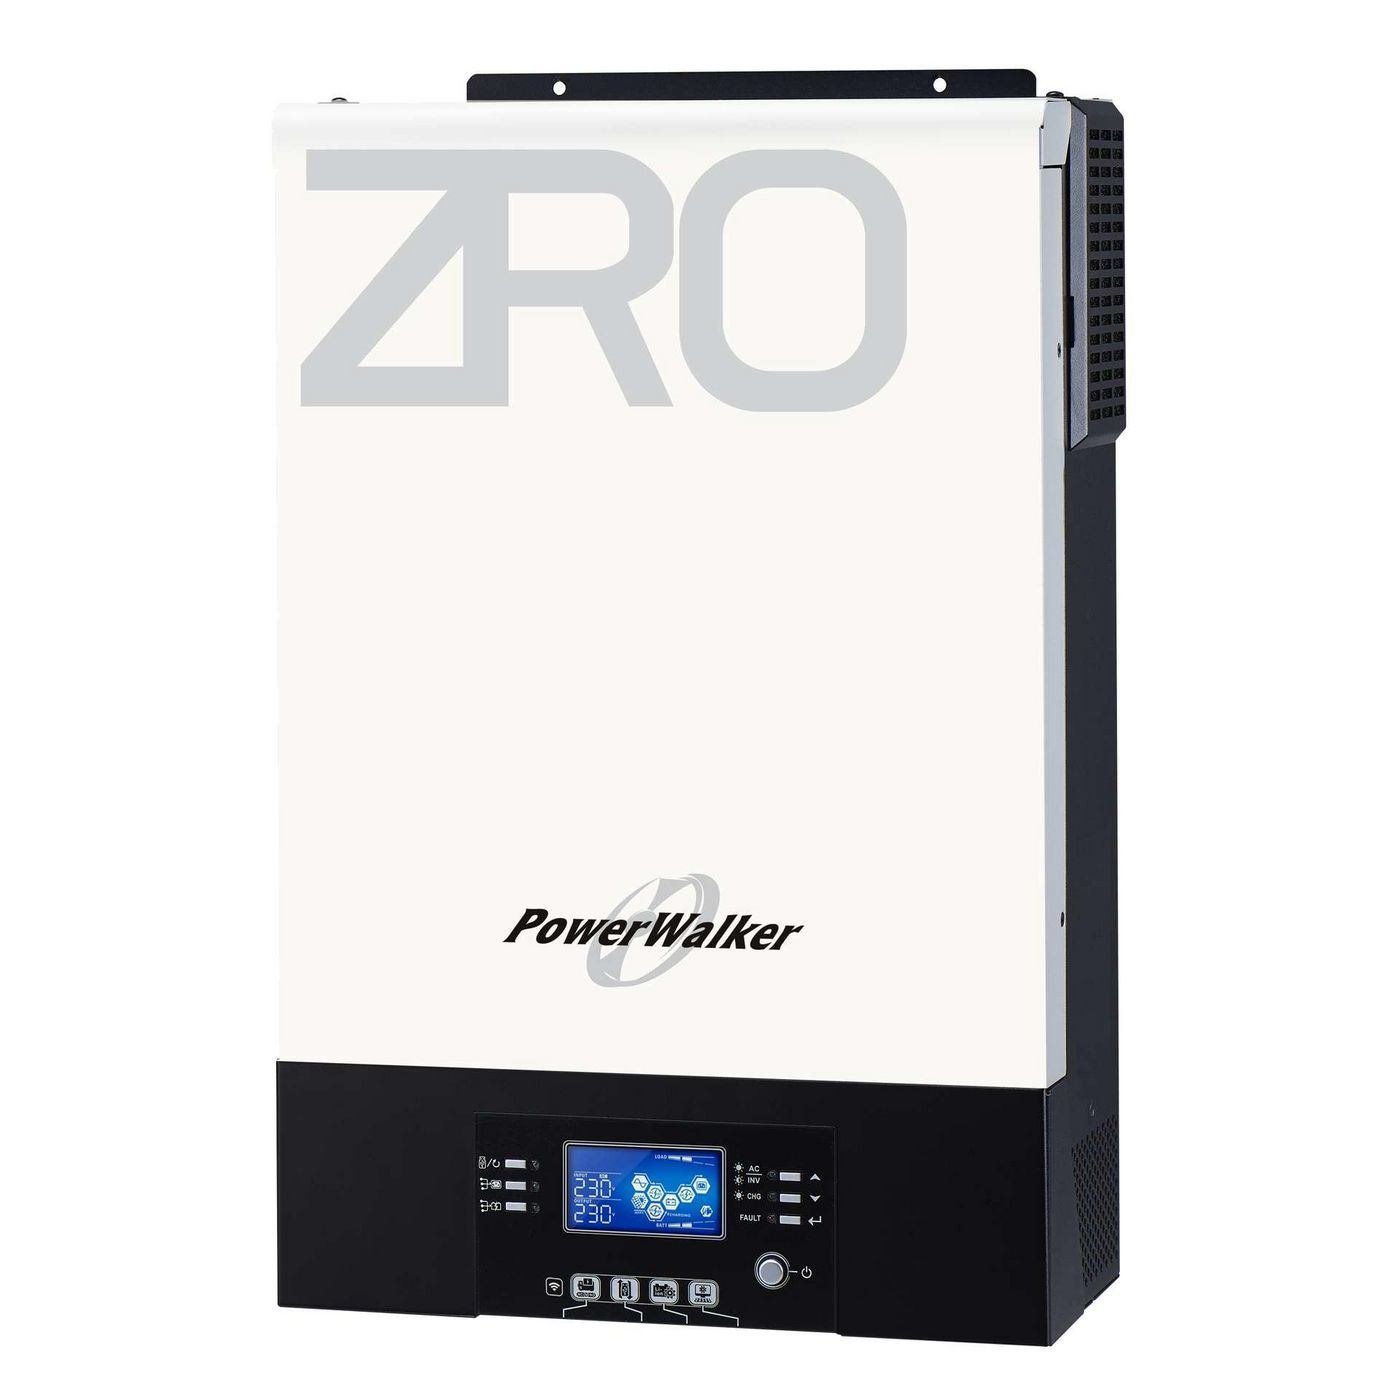 PowerWalker PW Solar Inverter 5000 Zro - Warranty: 60M